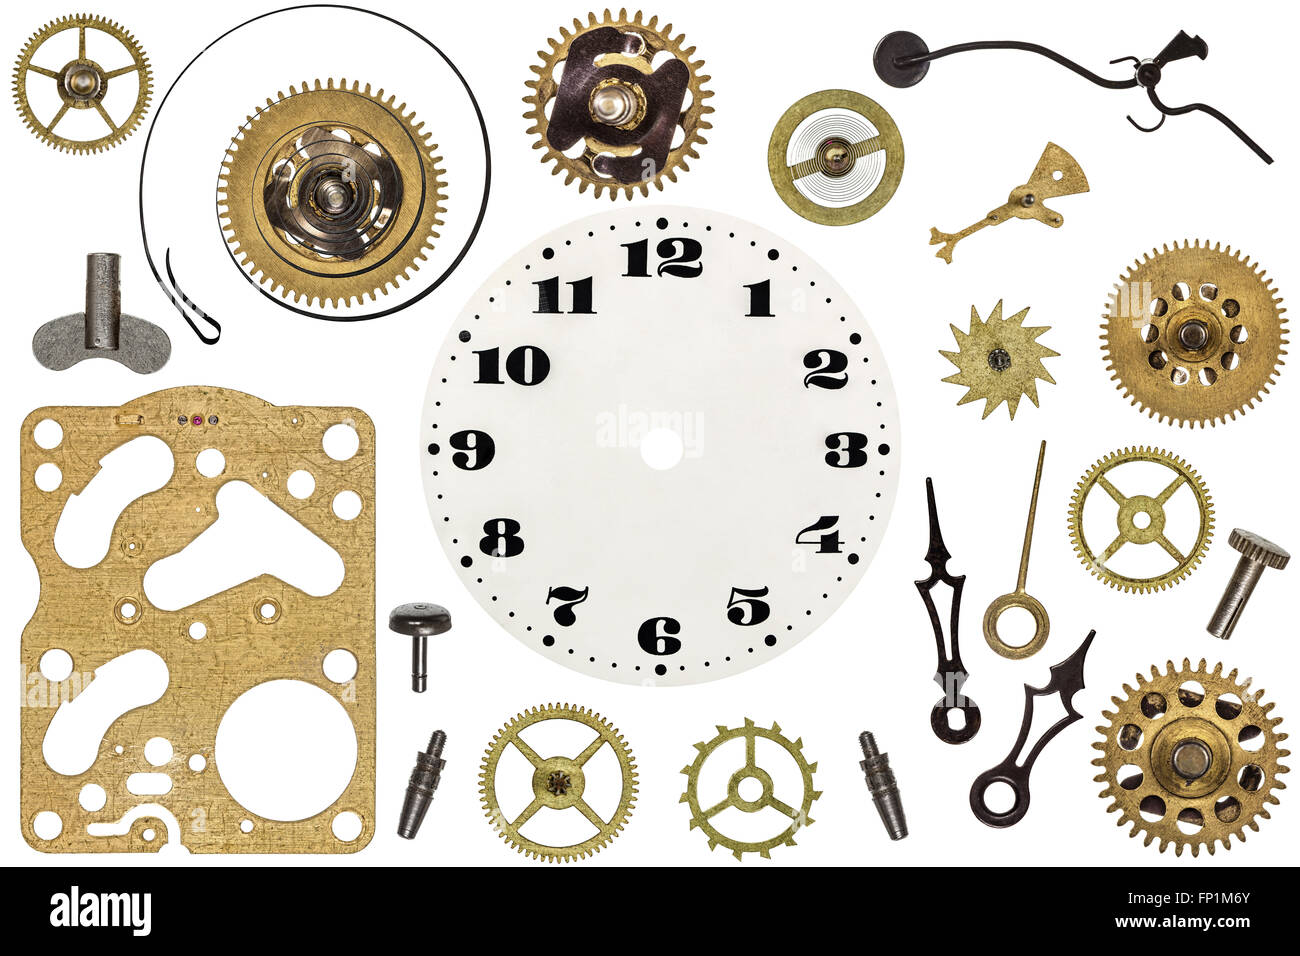 Pièces de rechange pour l'horloge. Metal gears, rouages, d'horloge et d'autres détails Banque D'Images